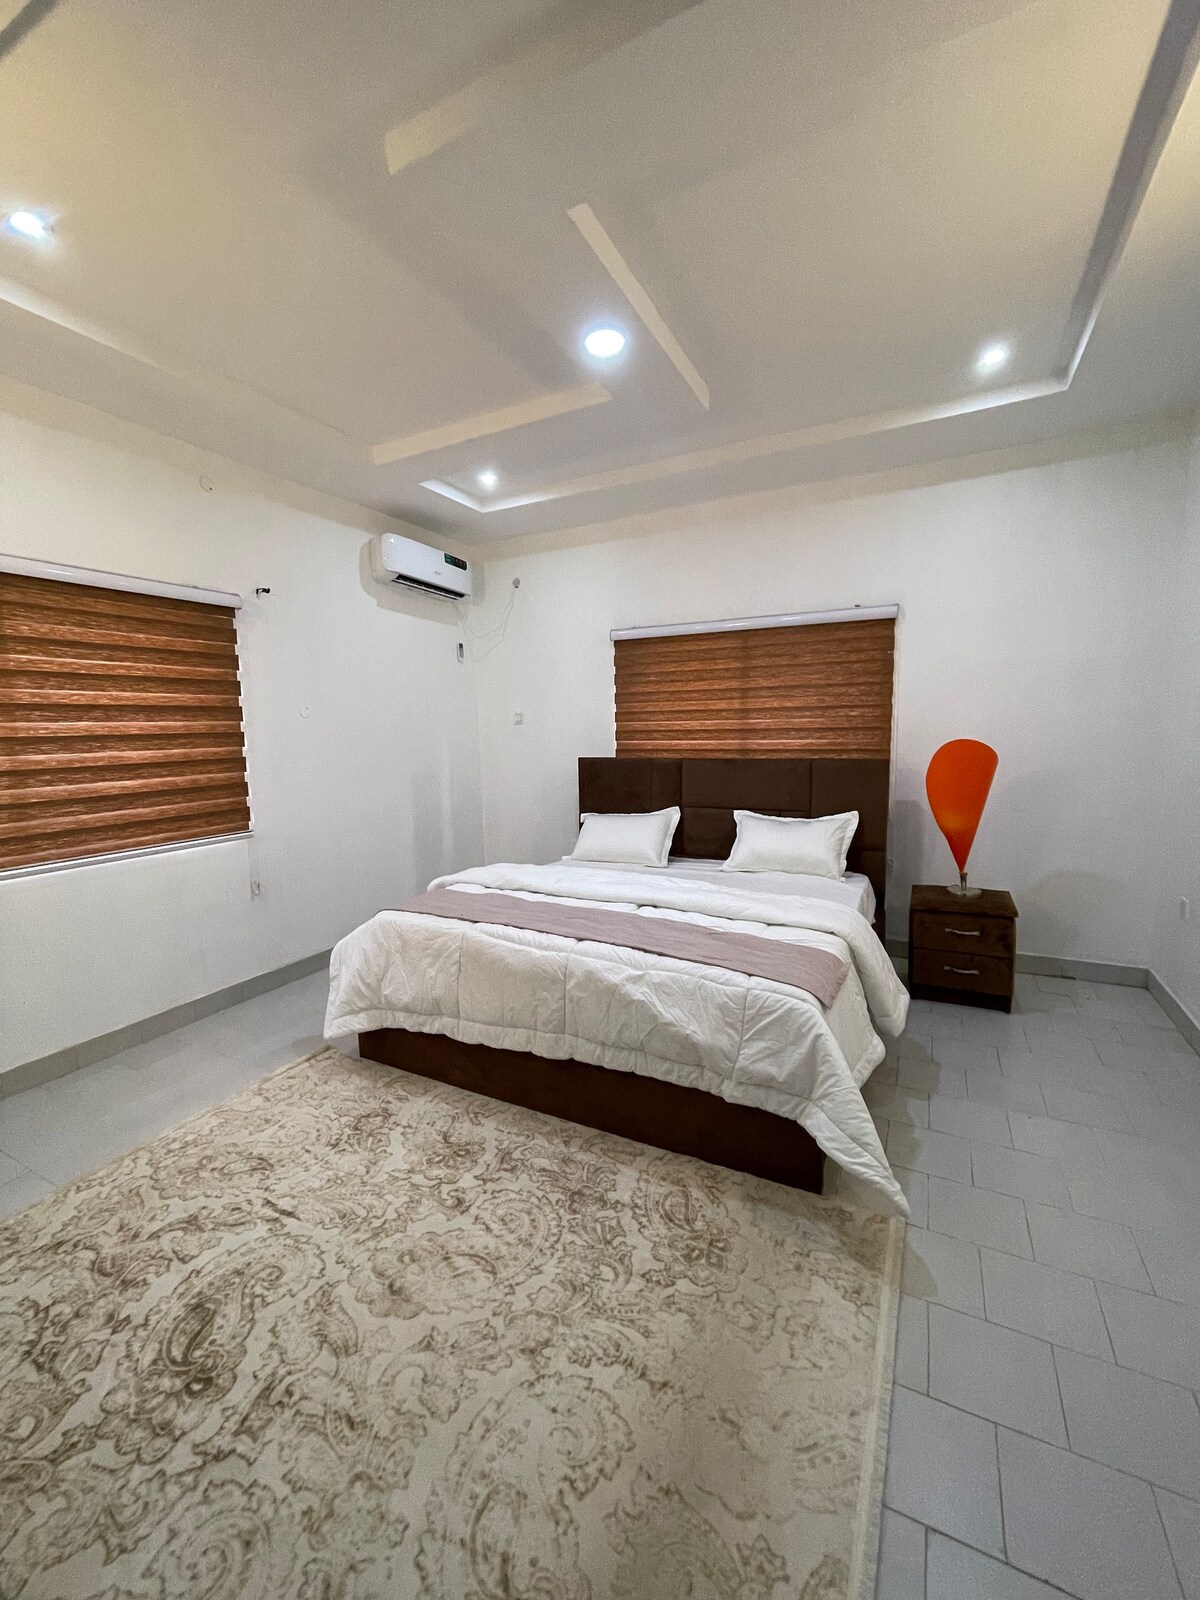 Exquisite 3-Bedroom home in the heart of Kaduna.